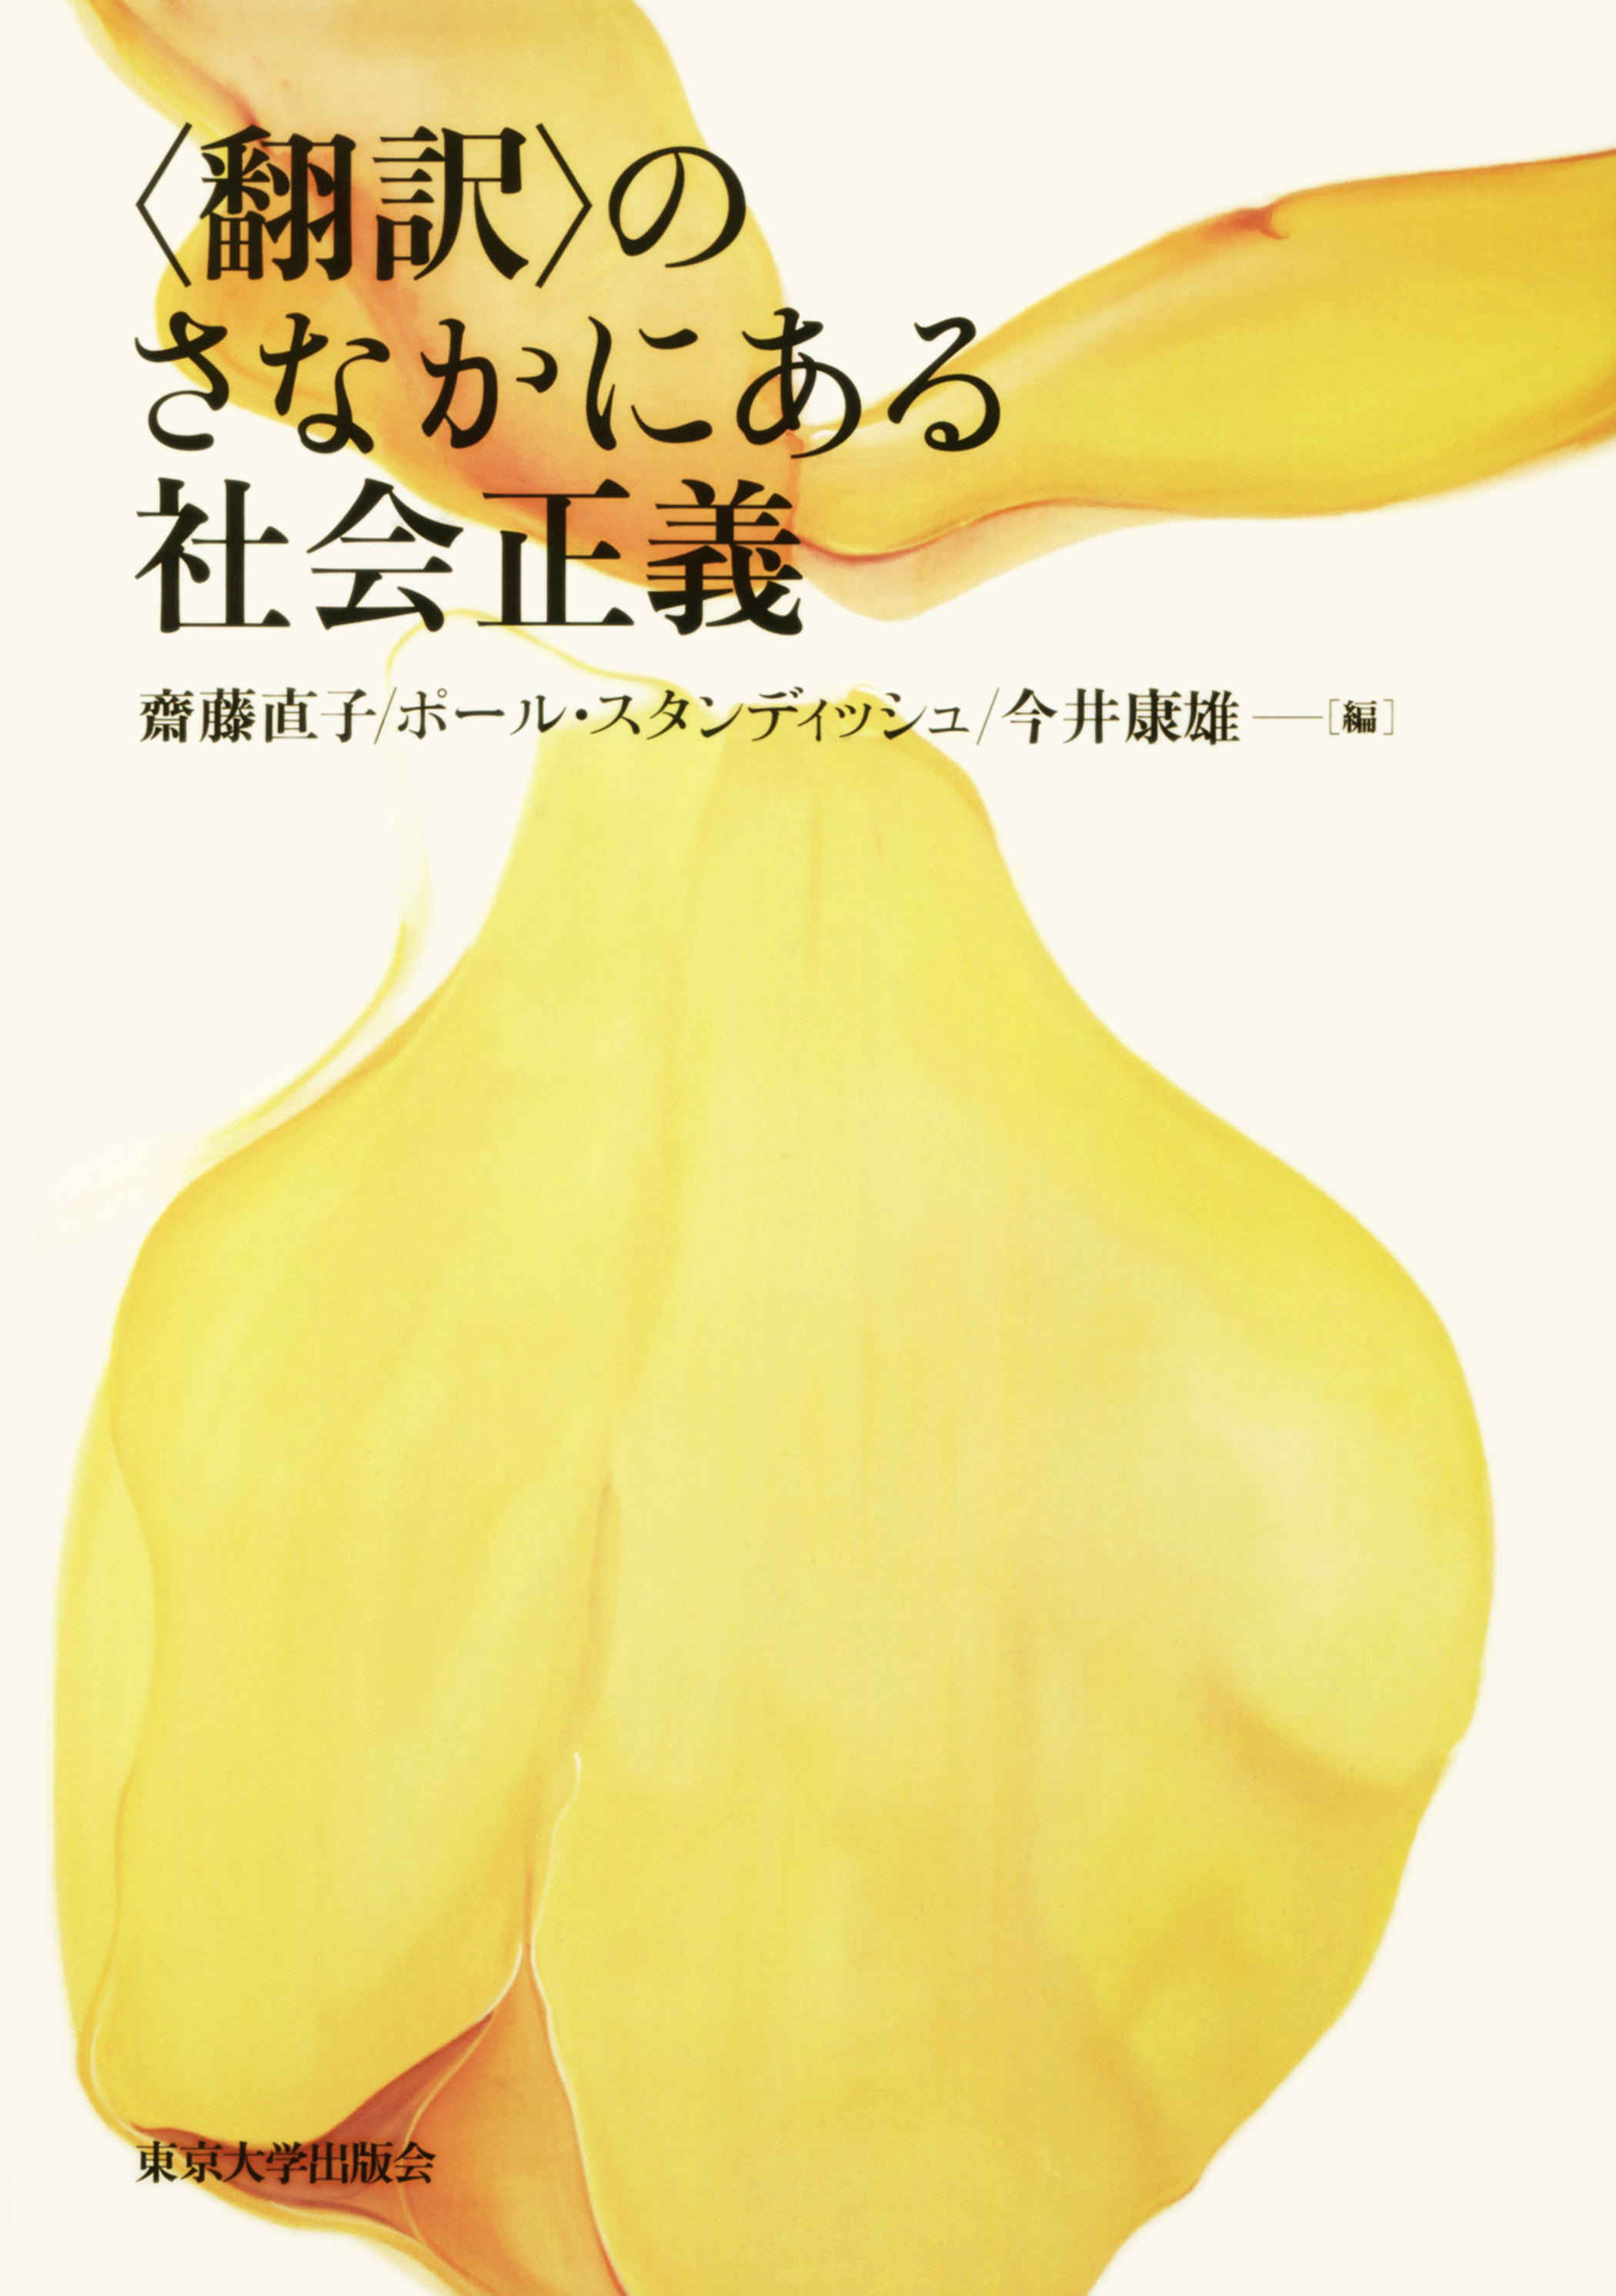 黄色い花のイラスト